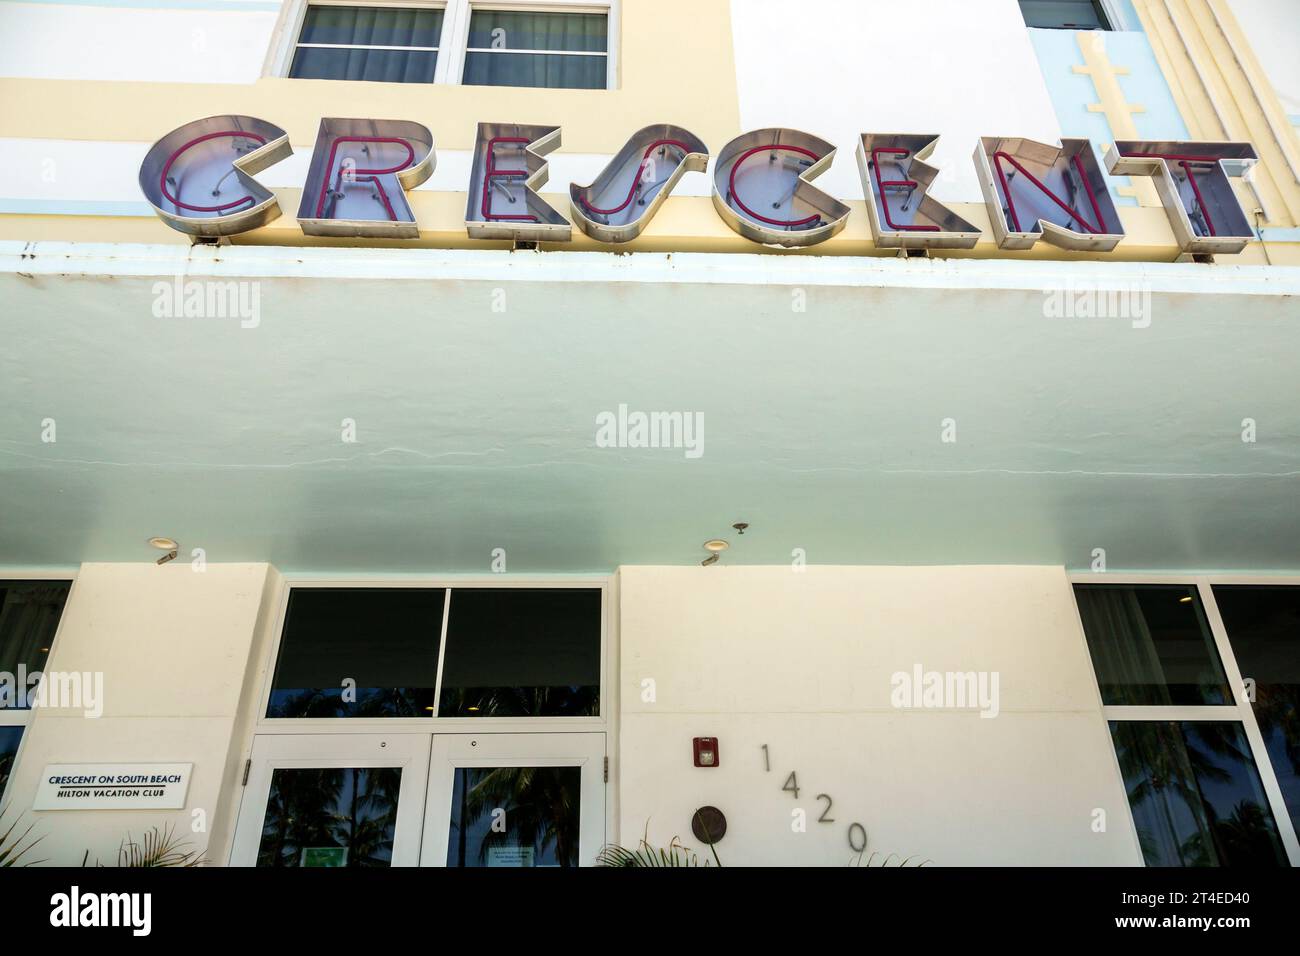 Miami Beach Floride, extérieur, entrée principale de l'hôtel, Ocean Drive Hilton Vacation Club Crescent sur South Beach Miami enseigne, hôtels motels b Banque D'Images